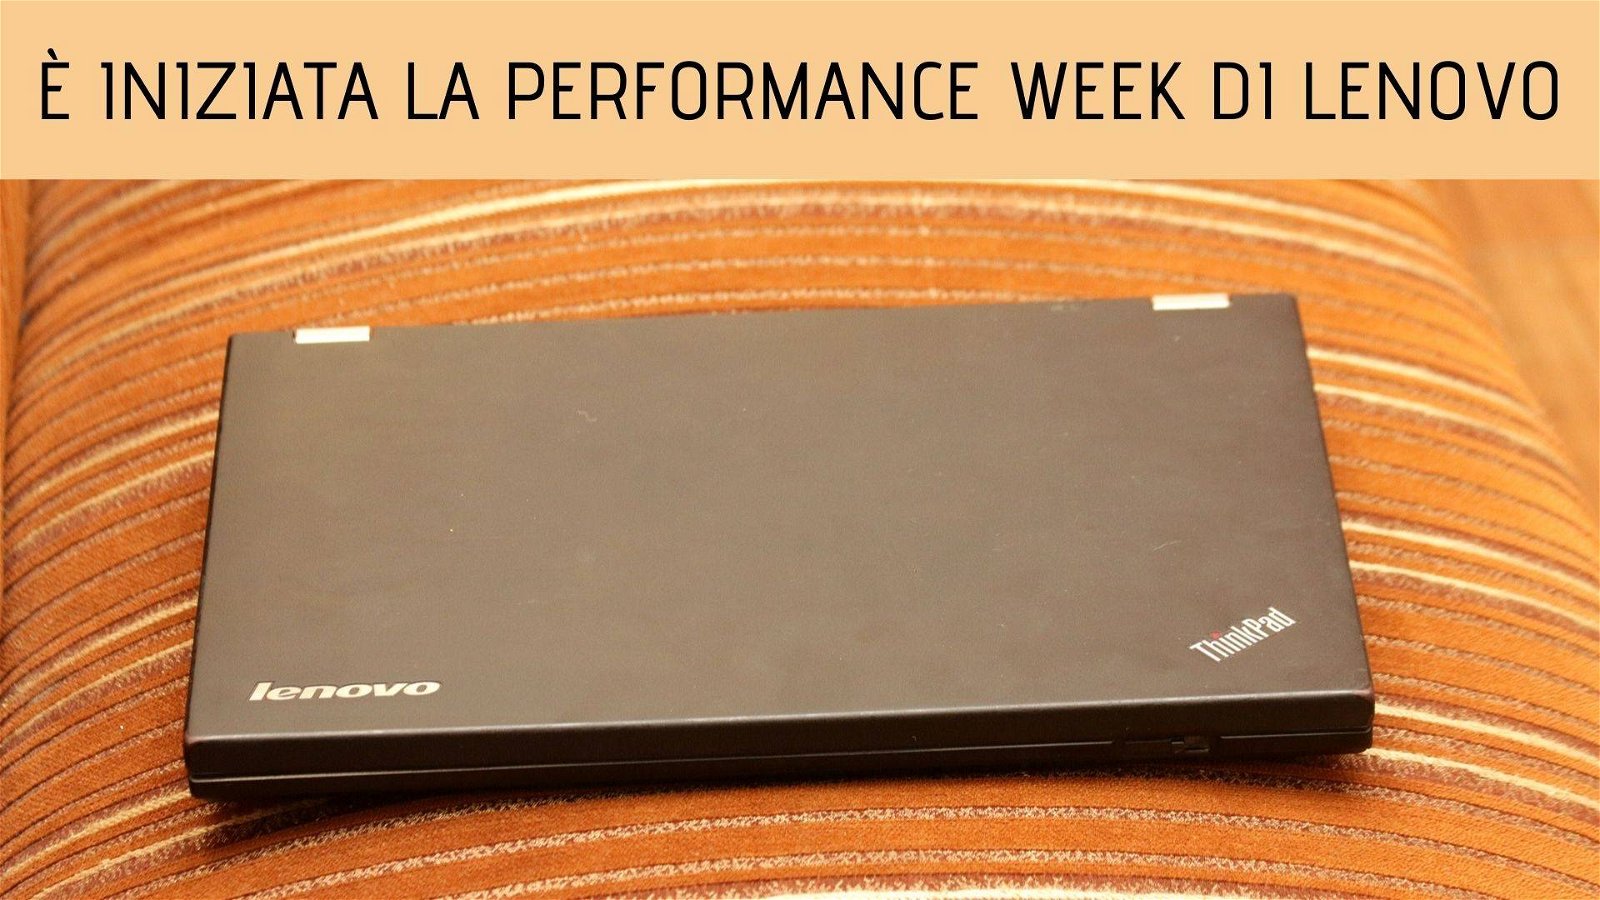 Immagine di Offerte Lenovo, fino al 20% di sconto per la Performance Week